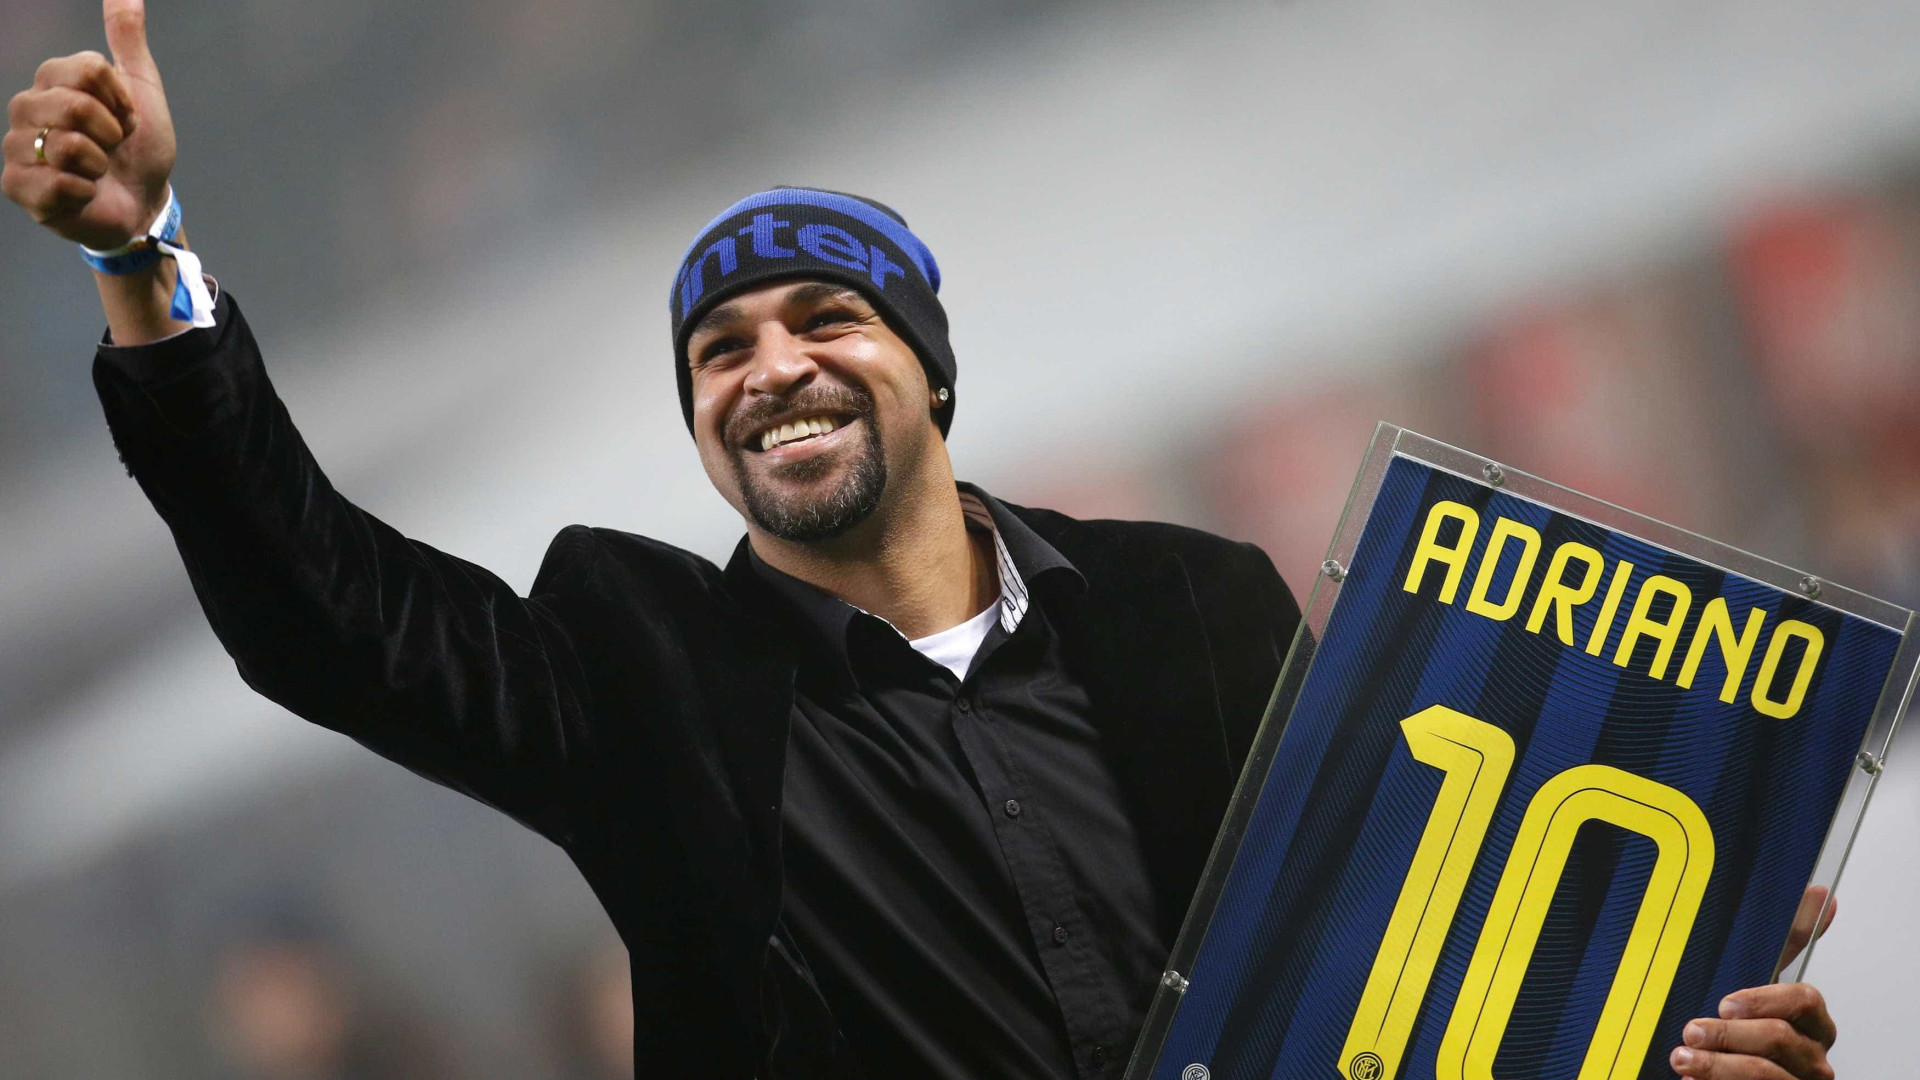 Adriano conta como morte do pai afetou vida e carreira no futebol